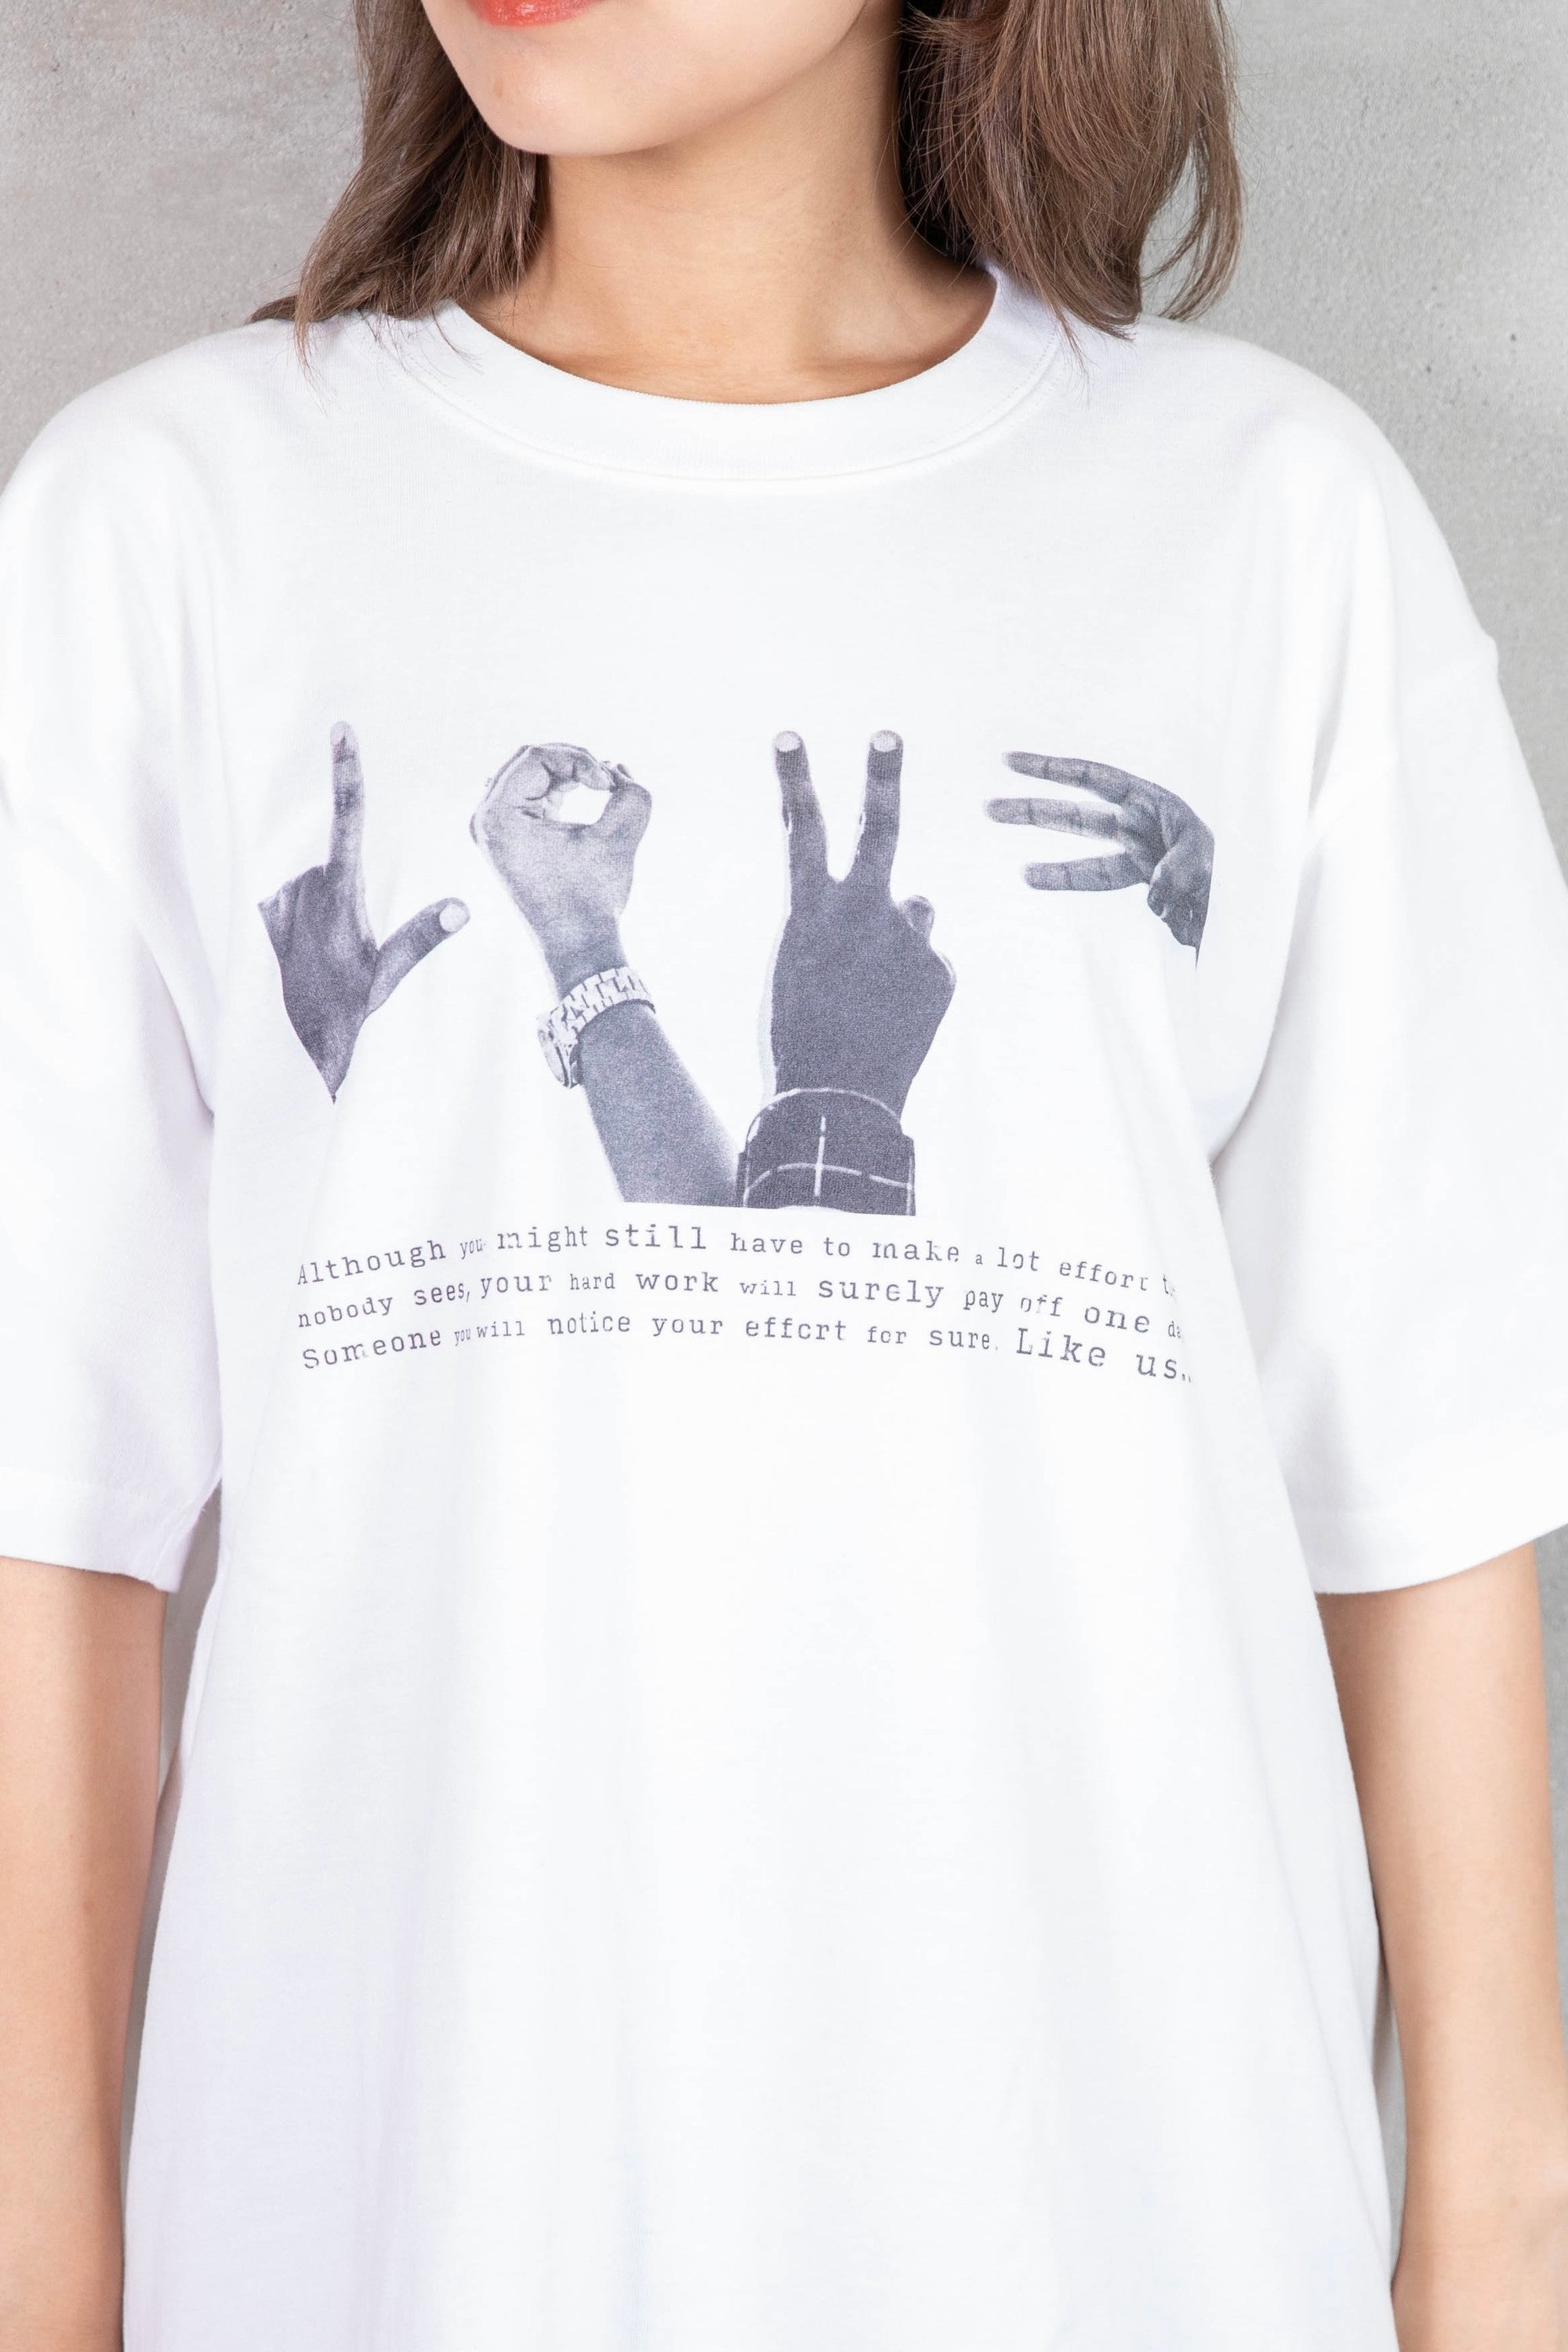 hands T-shirt